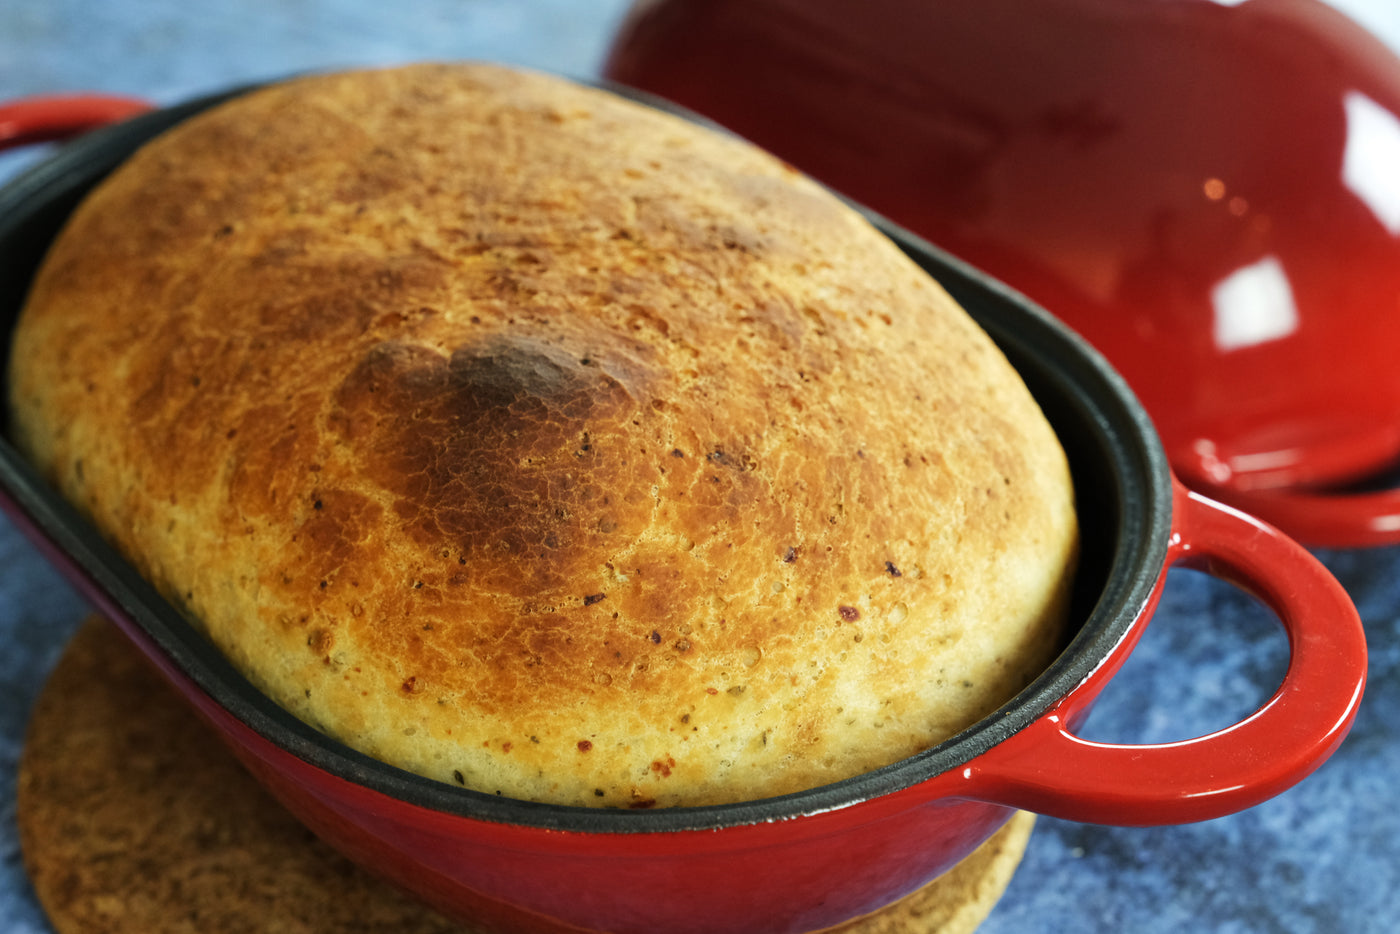 Moule à pain en fonte émaillée avec couvercle, rouge, passe au four pour la cuisson, kit de pain artisanal – Moule à pain